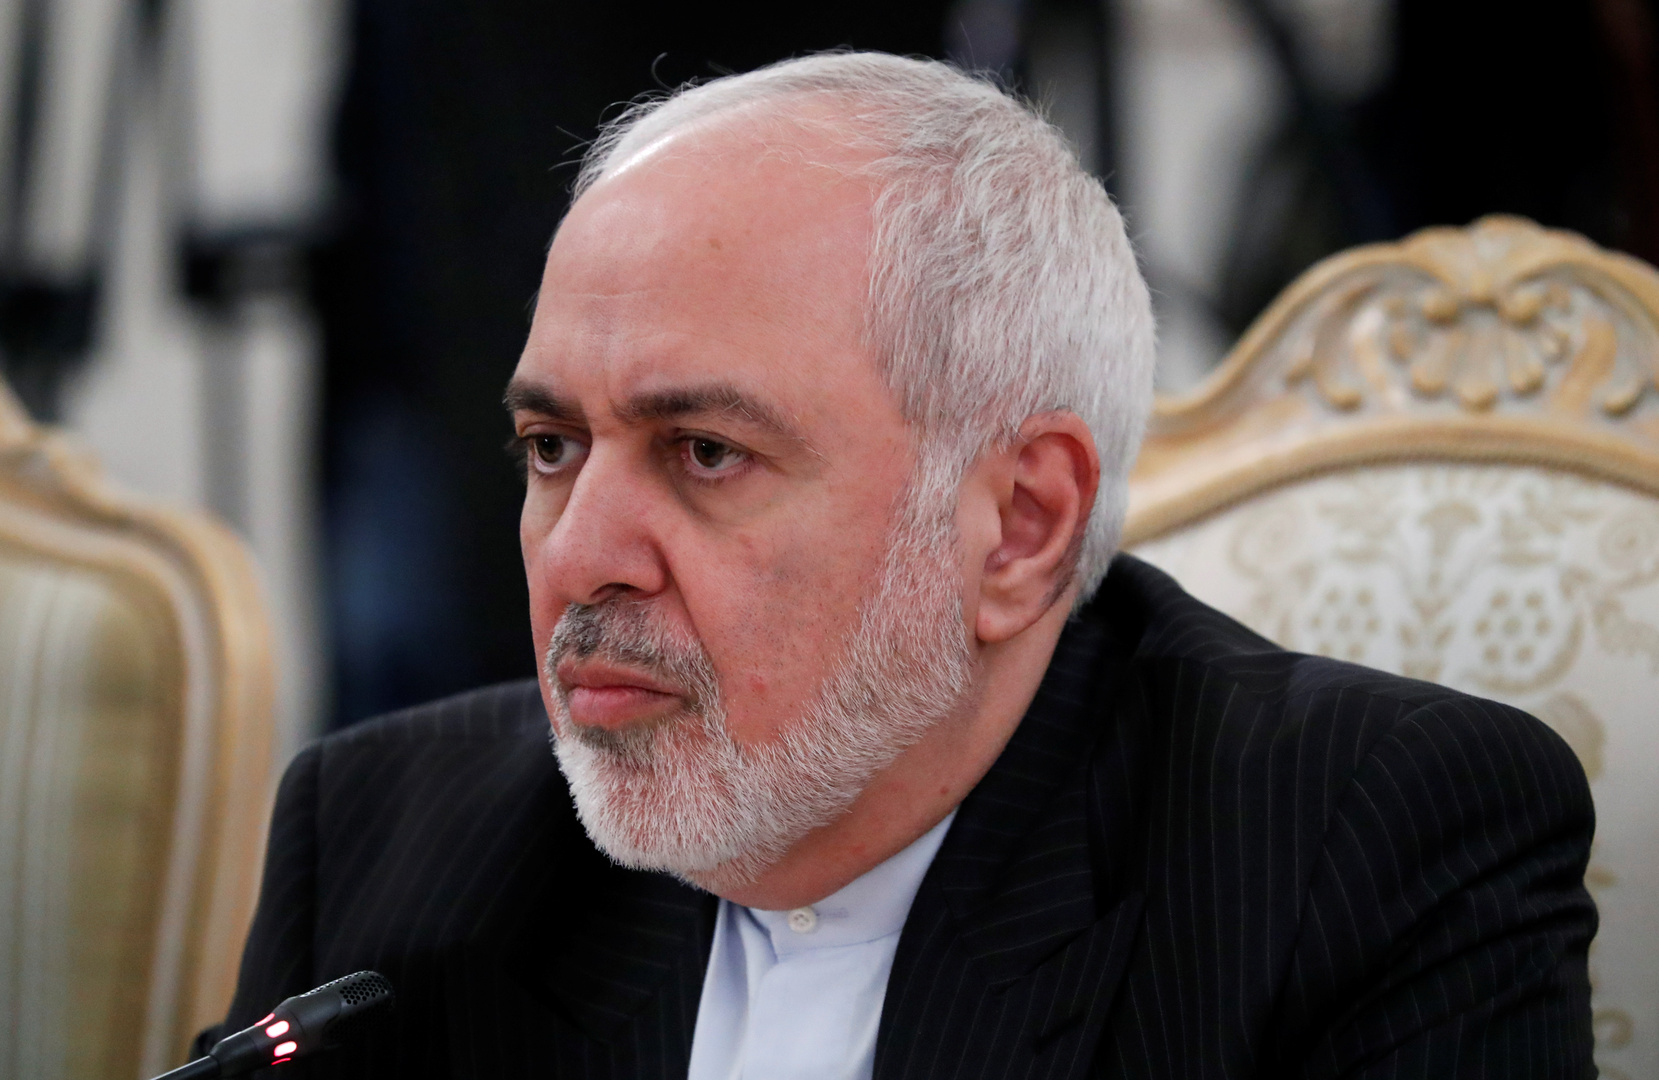 سفير إيران: لم نتاقش في مقر الخارجية الروسية ملف التسريبات الصوتية لظريف